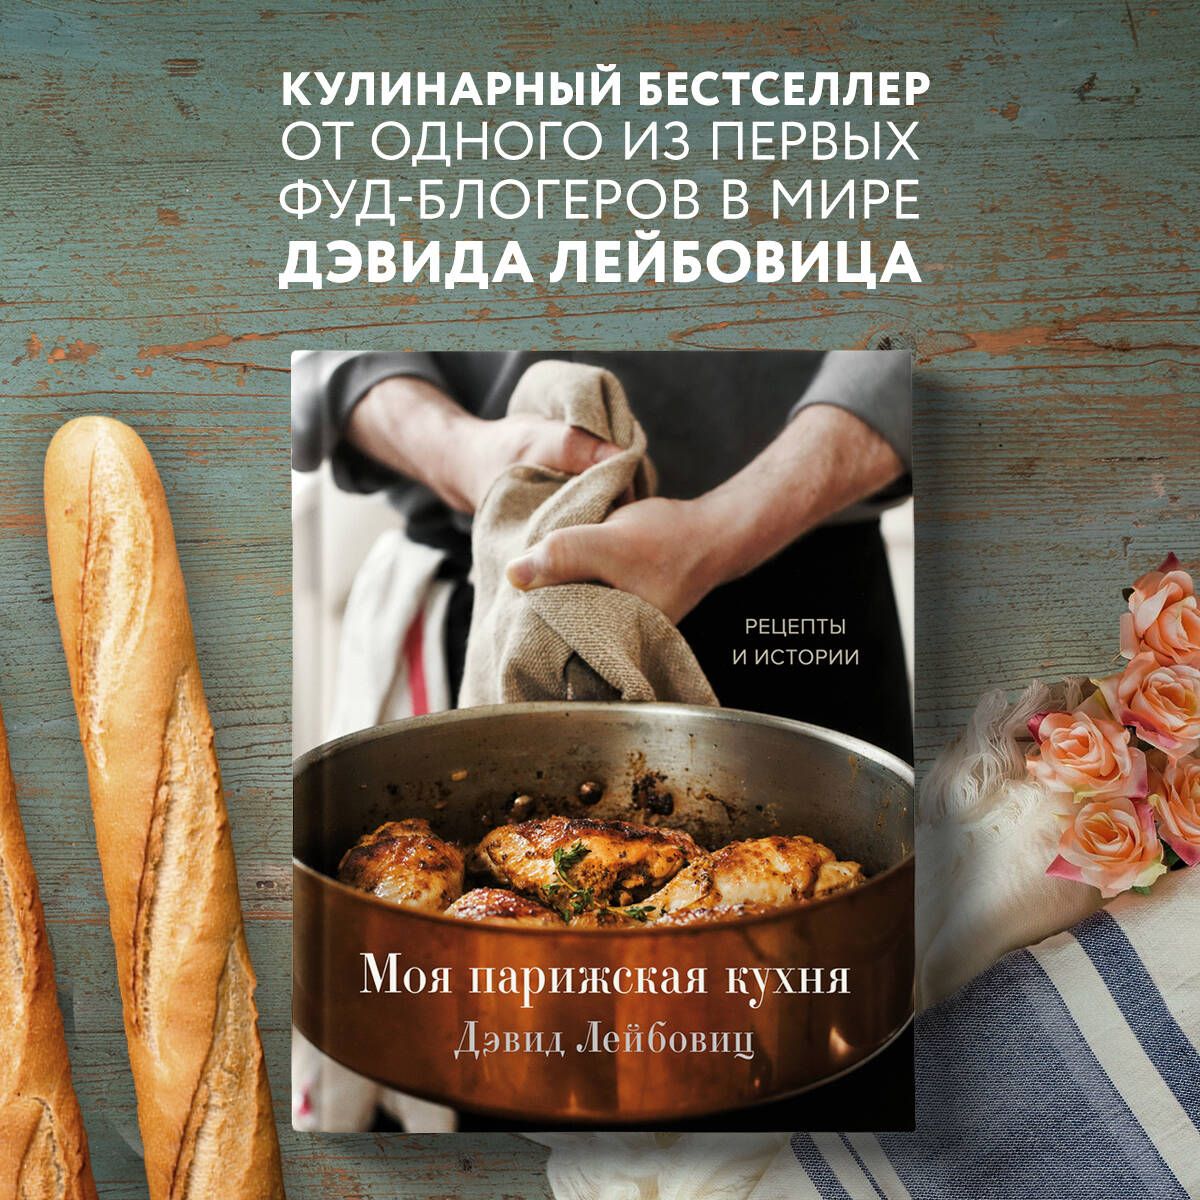 Русская кухня: еда, история, особенности